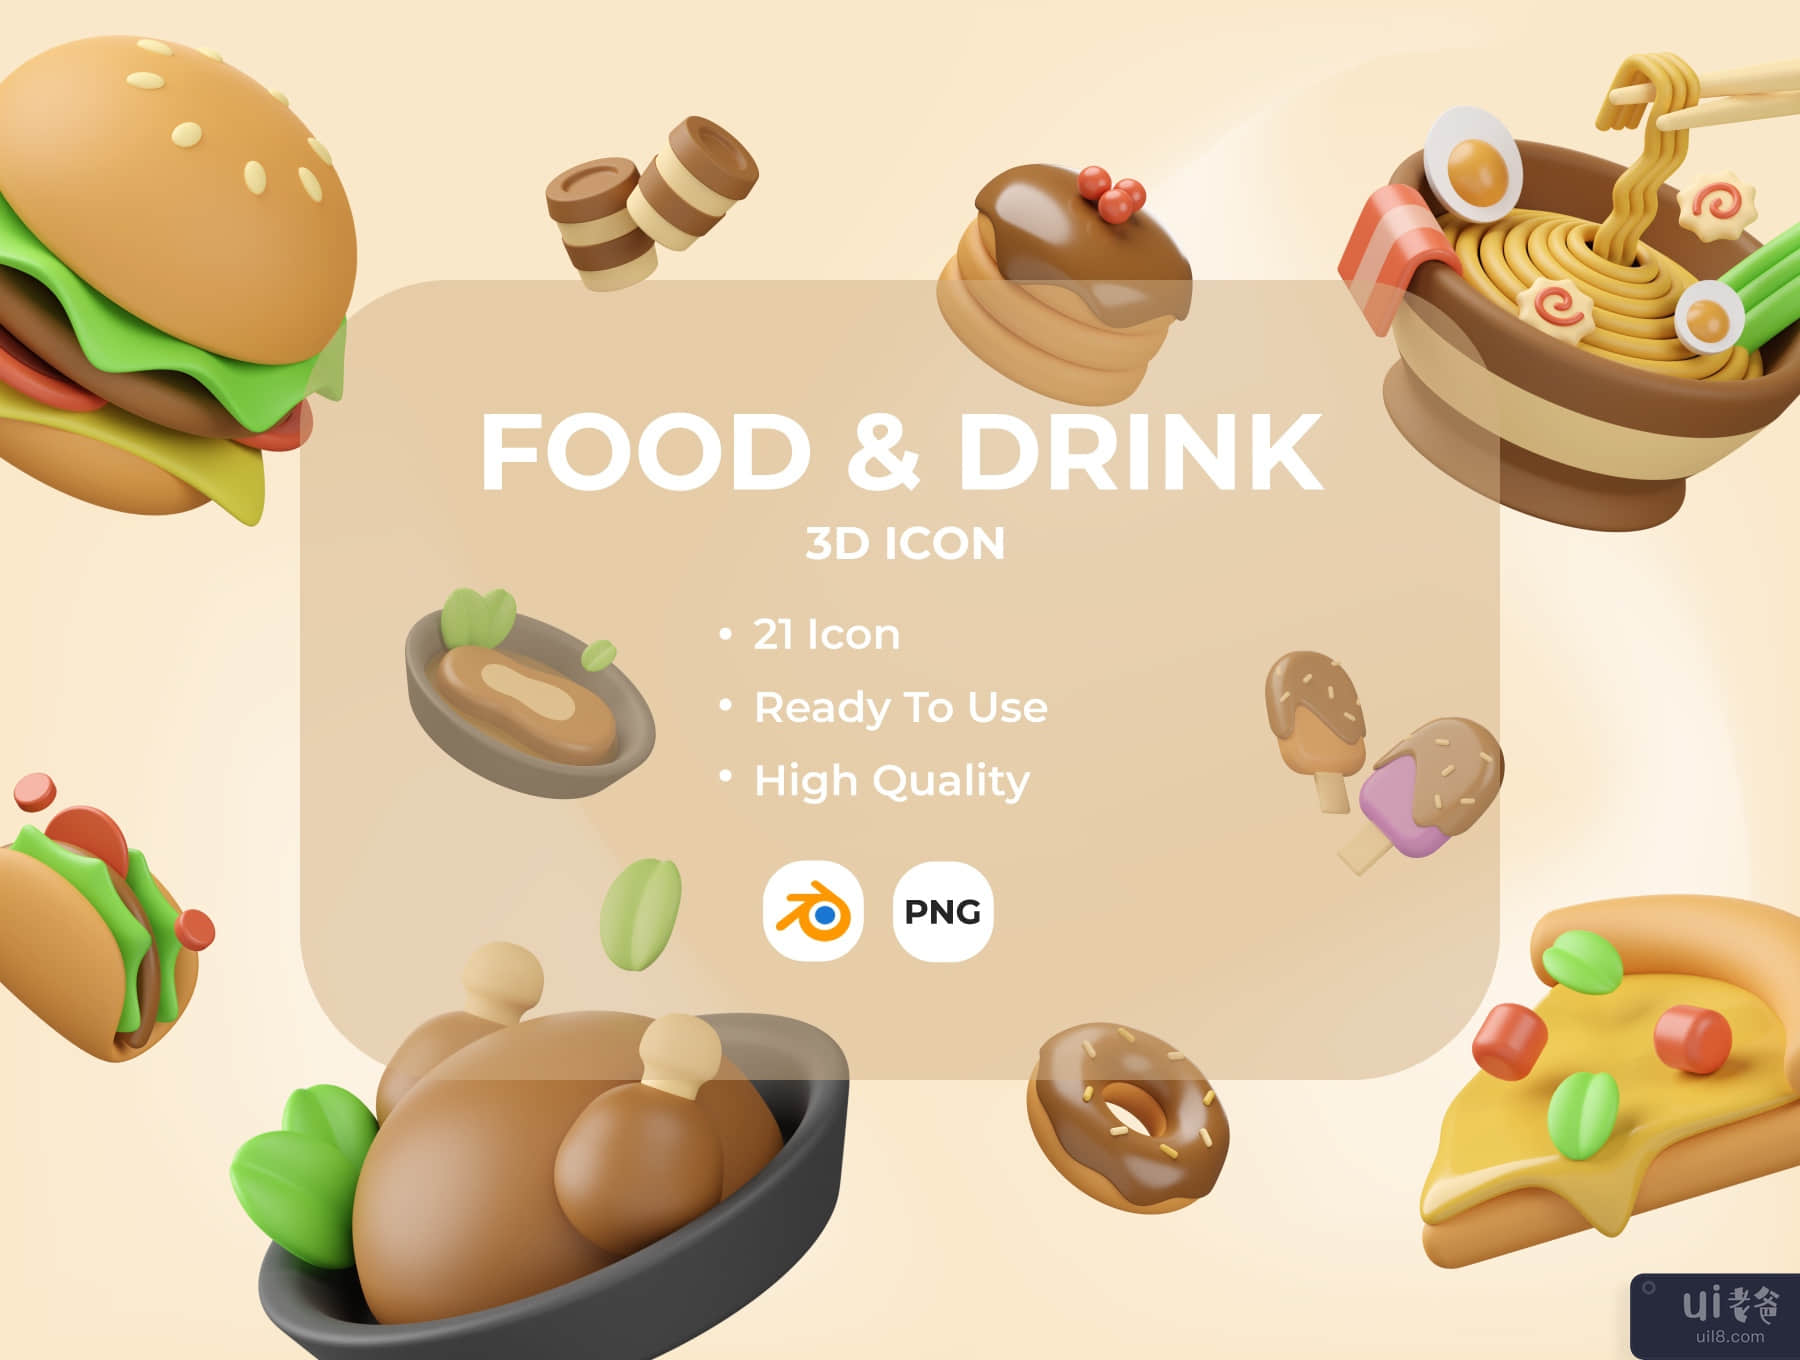 食品与饮料 3D 插画 (Food & Drink 3D Illustration)插图5